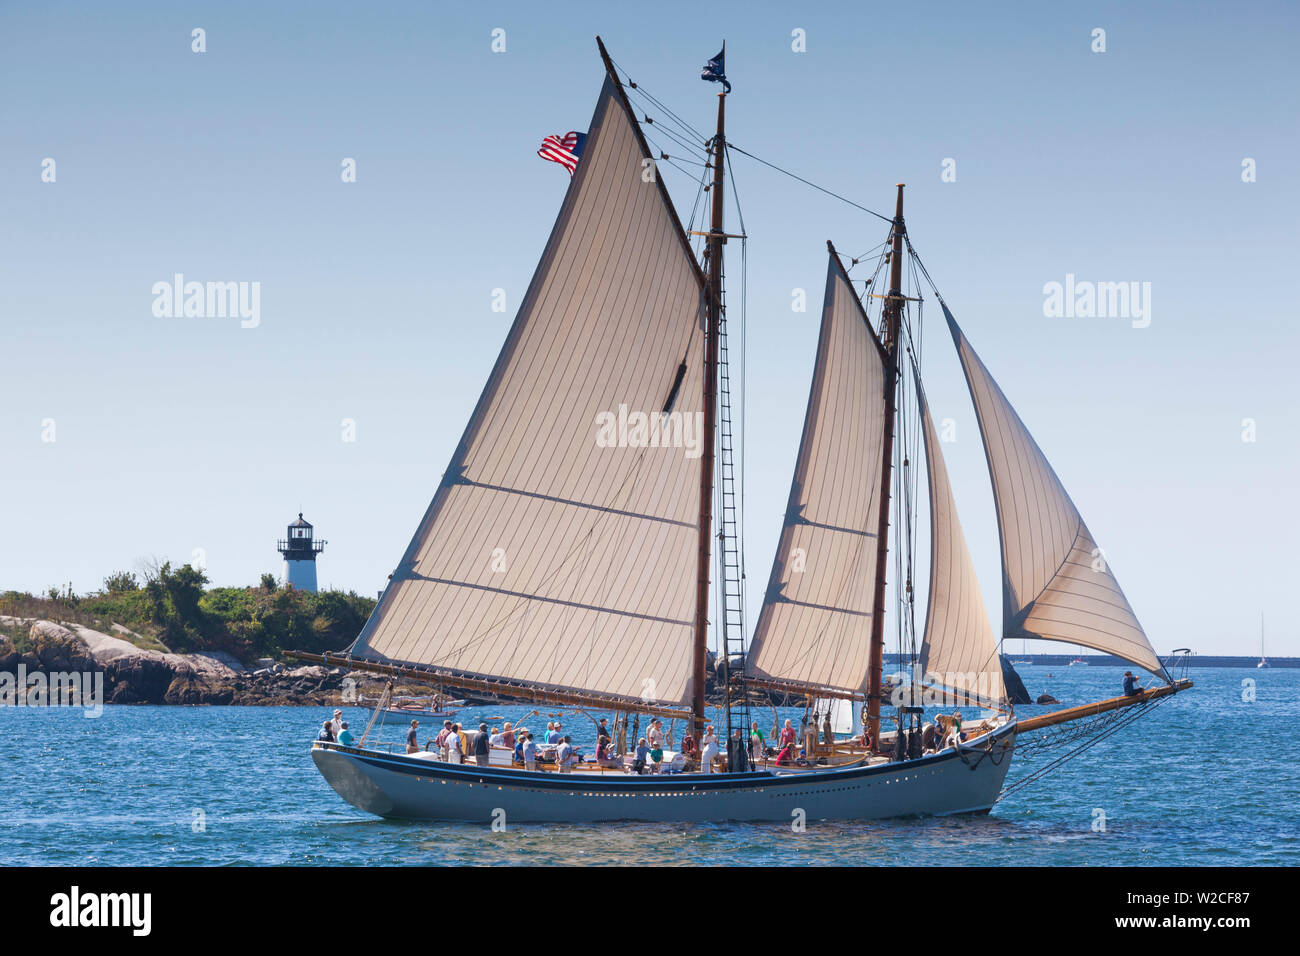 USA, Massachusetts, Cape Ann, Gloucester, annual Gloucester Schooner Festival, schooner Parade of Sail Stock Photo